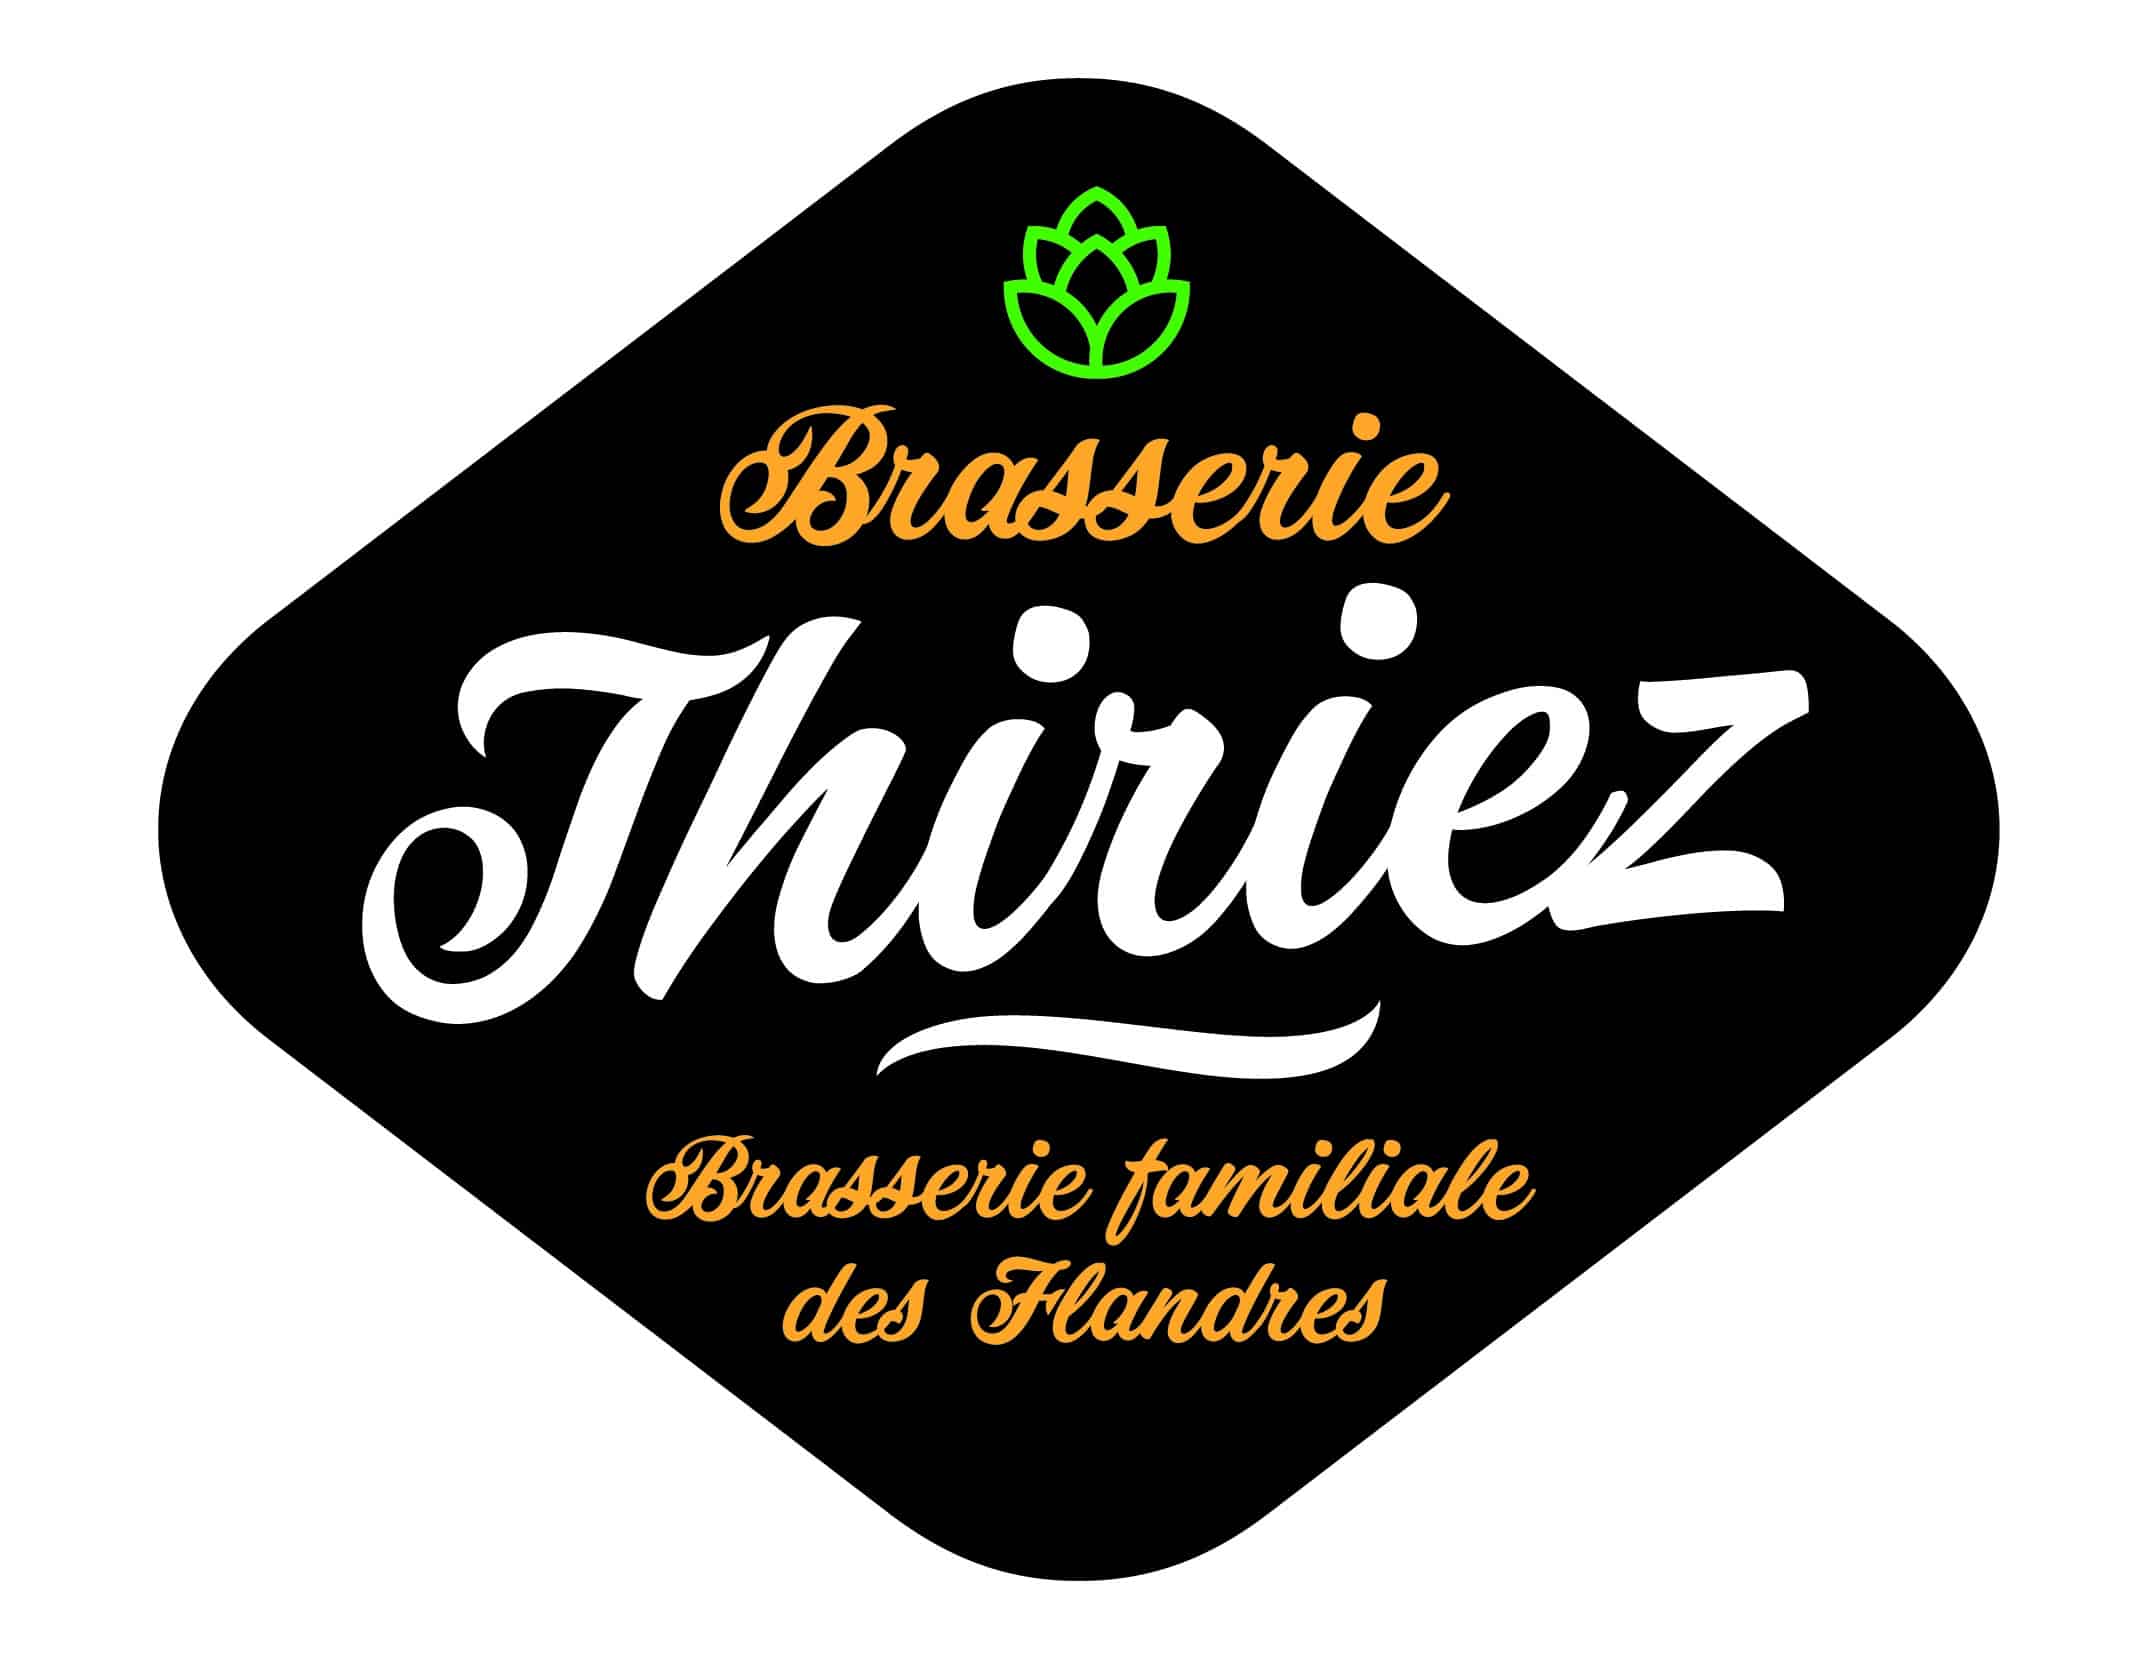 Brasserie Thiriez